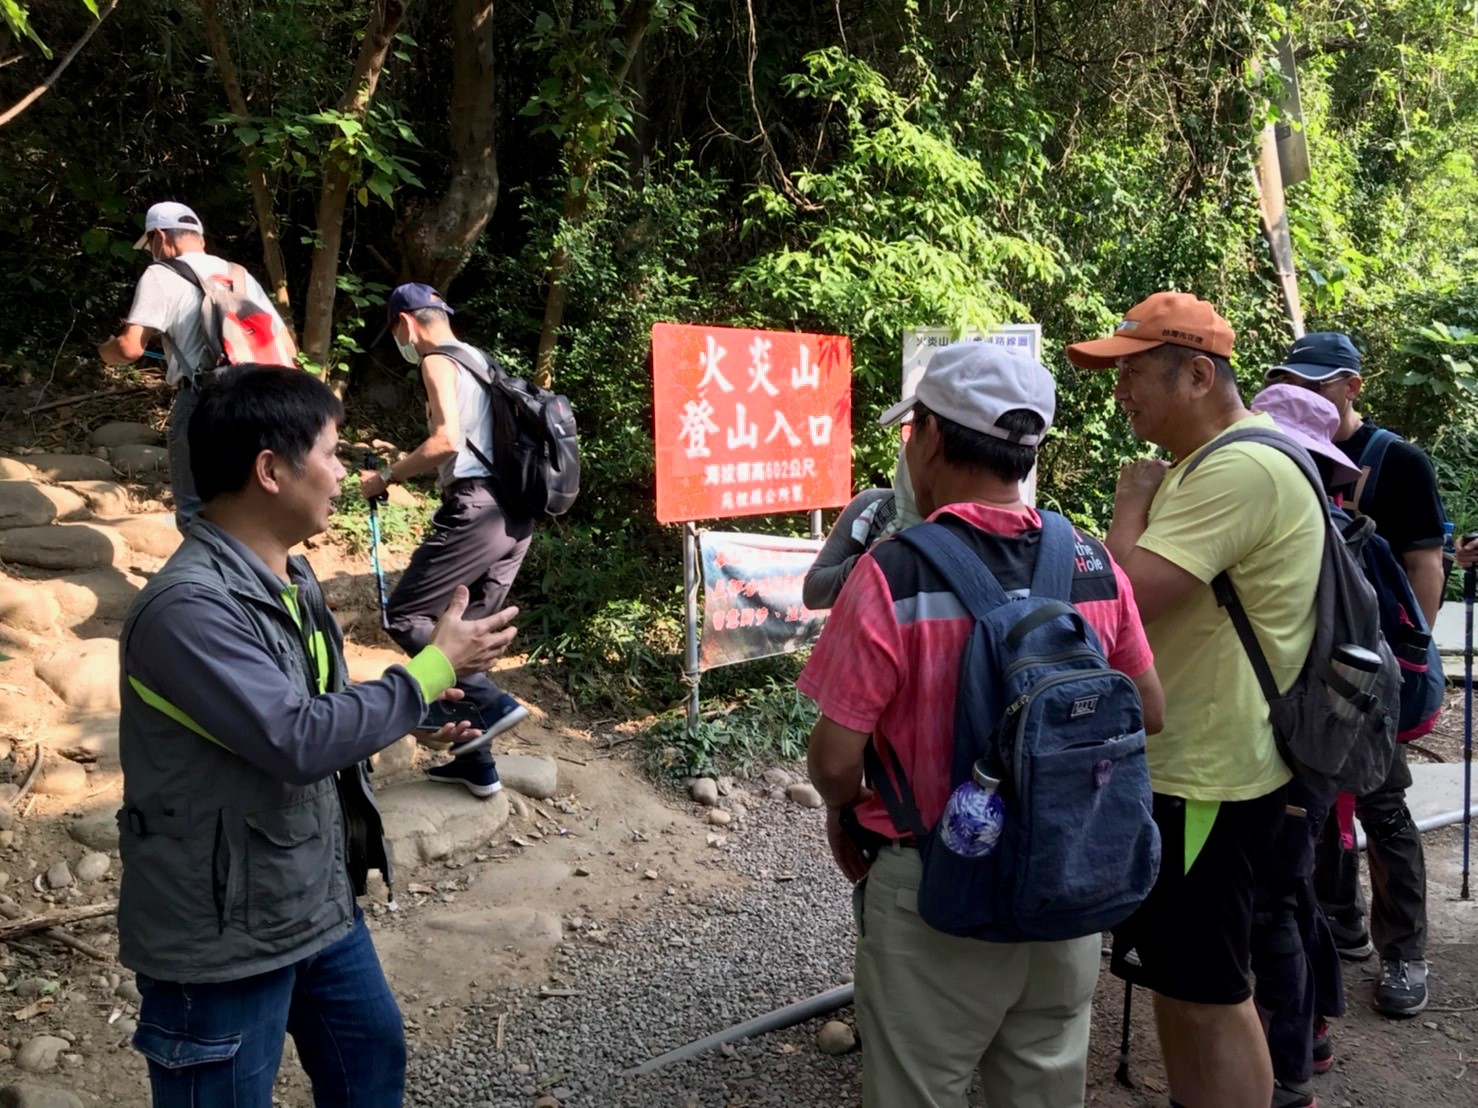 新竹林區管理處人員於火炎山登山口向民眾宣導登山安全 黃宇群攝影。(記者陳笠洋翻攝)